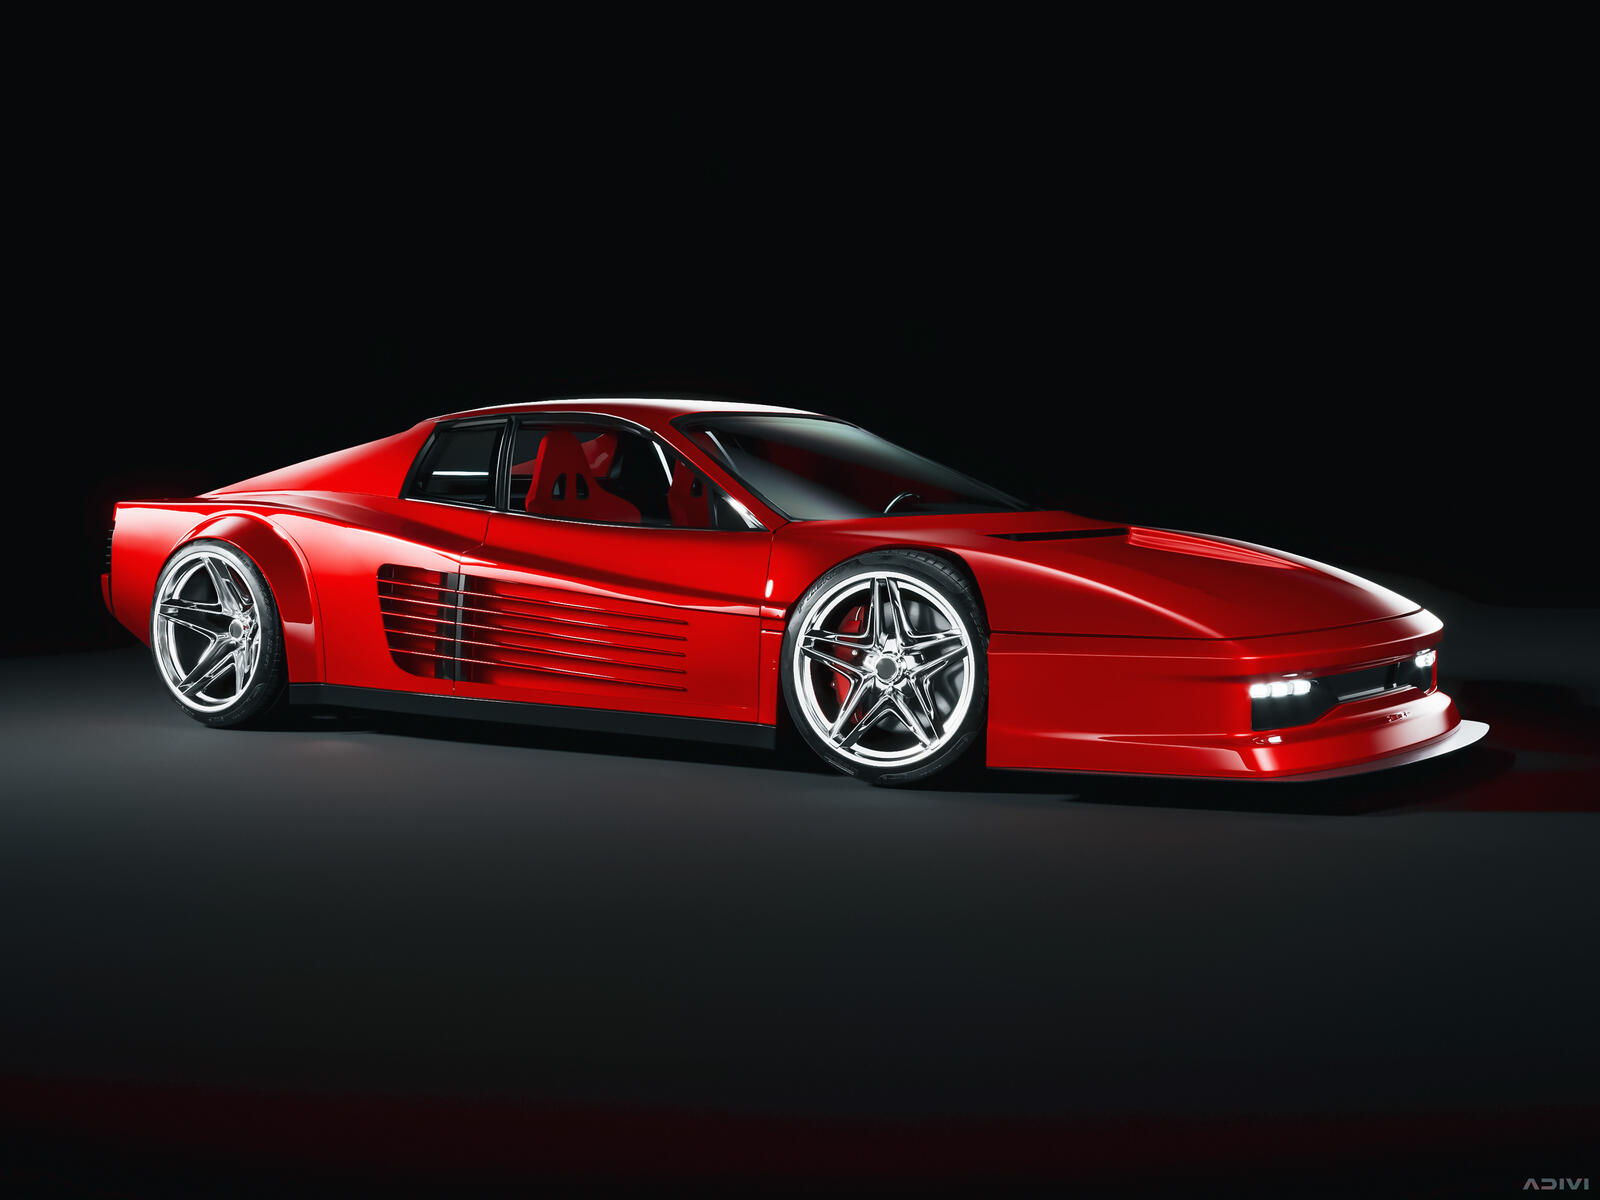 Бесплатное фото Ferrari testarossa красного цвета на черном фоне